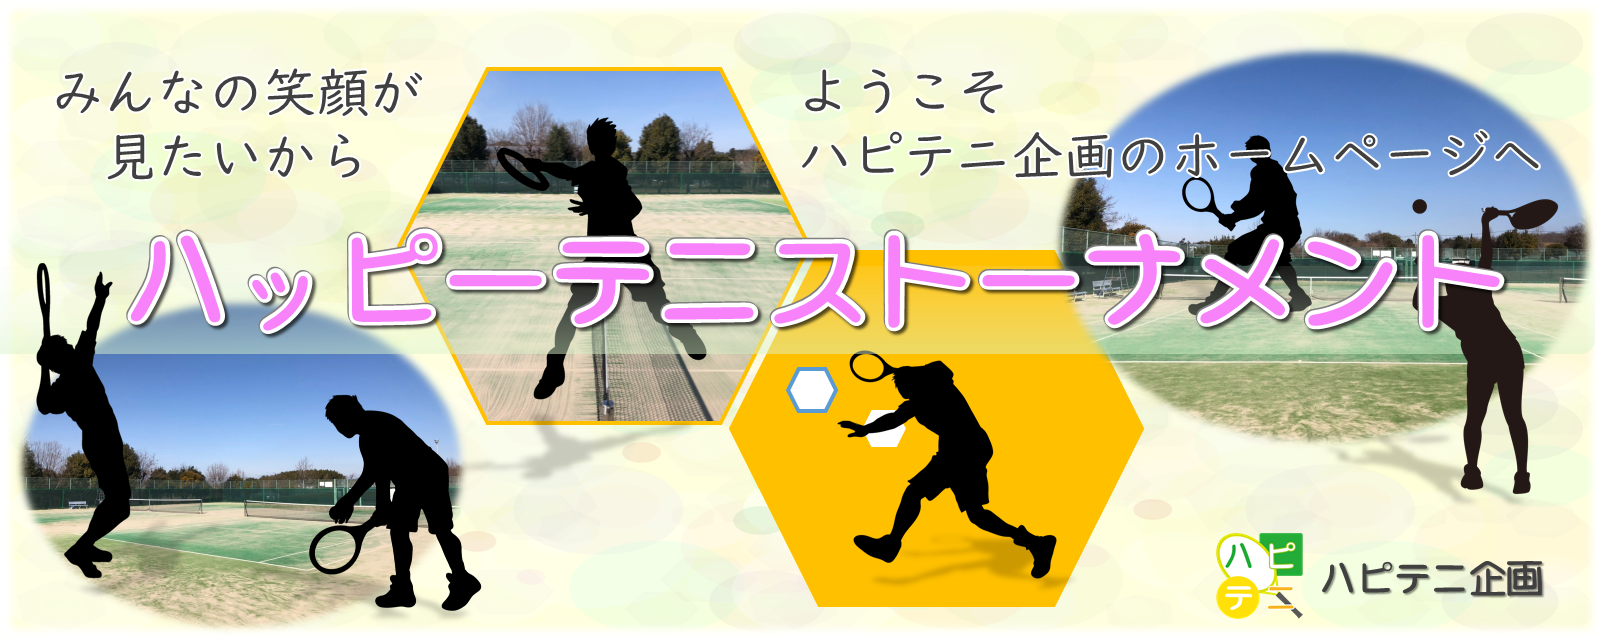 大阪のテニス大会-草トーナメント ハッピーテニストーナメント